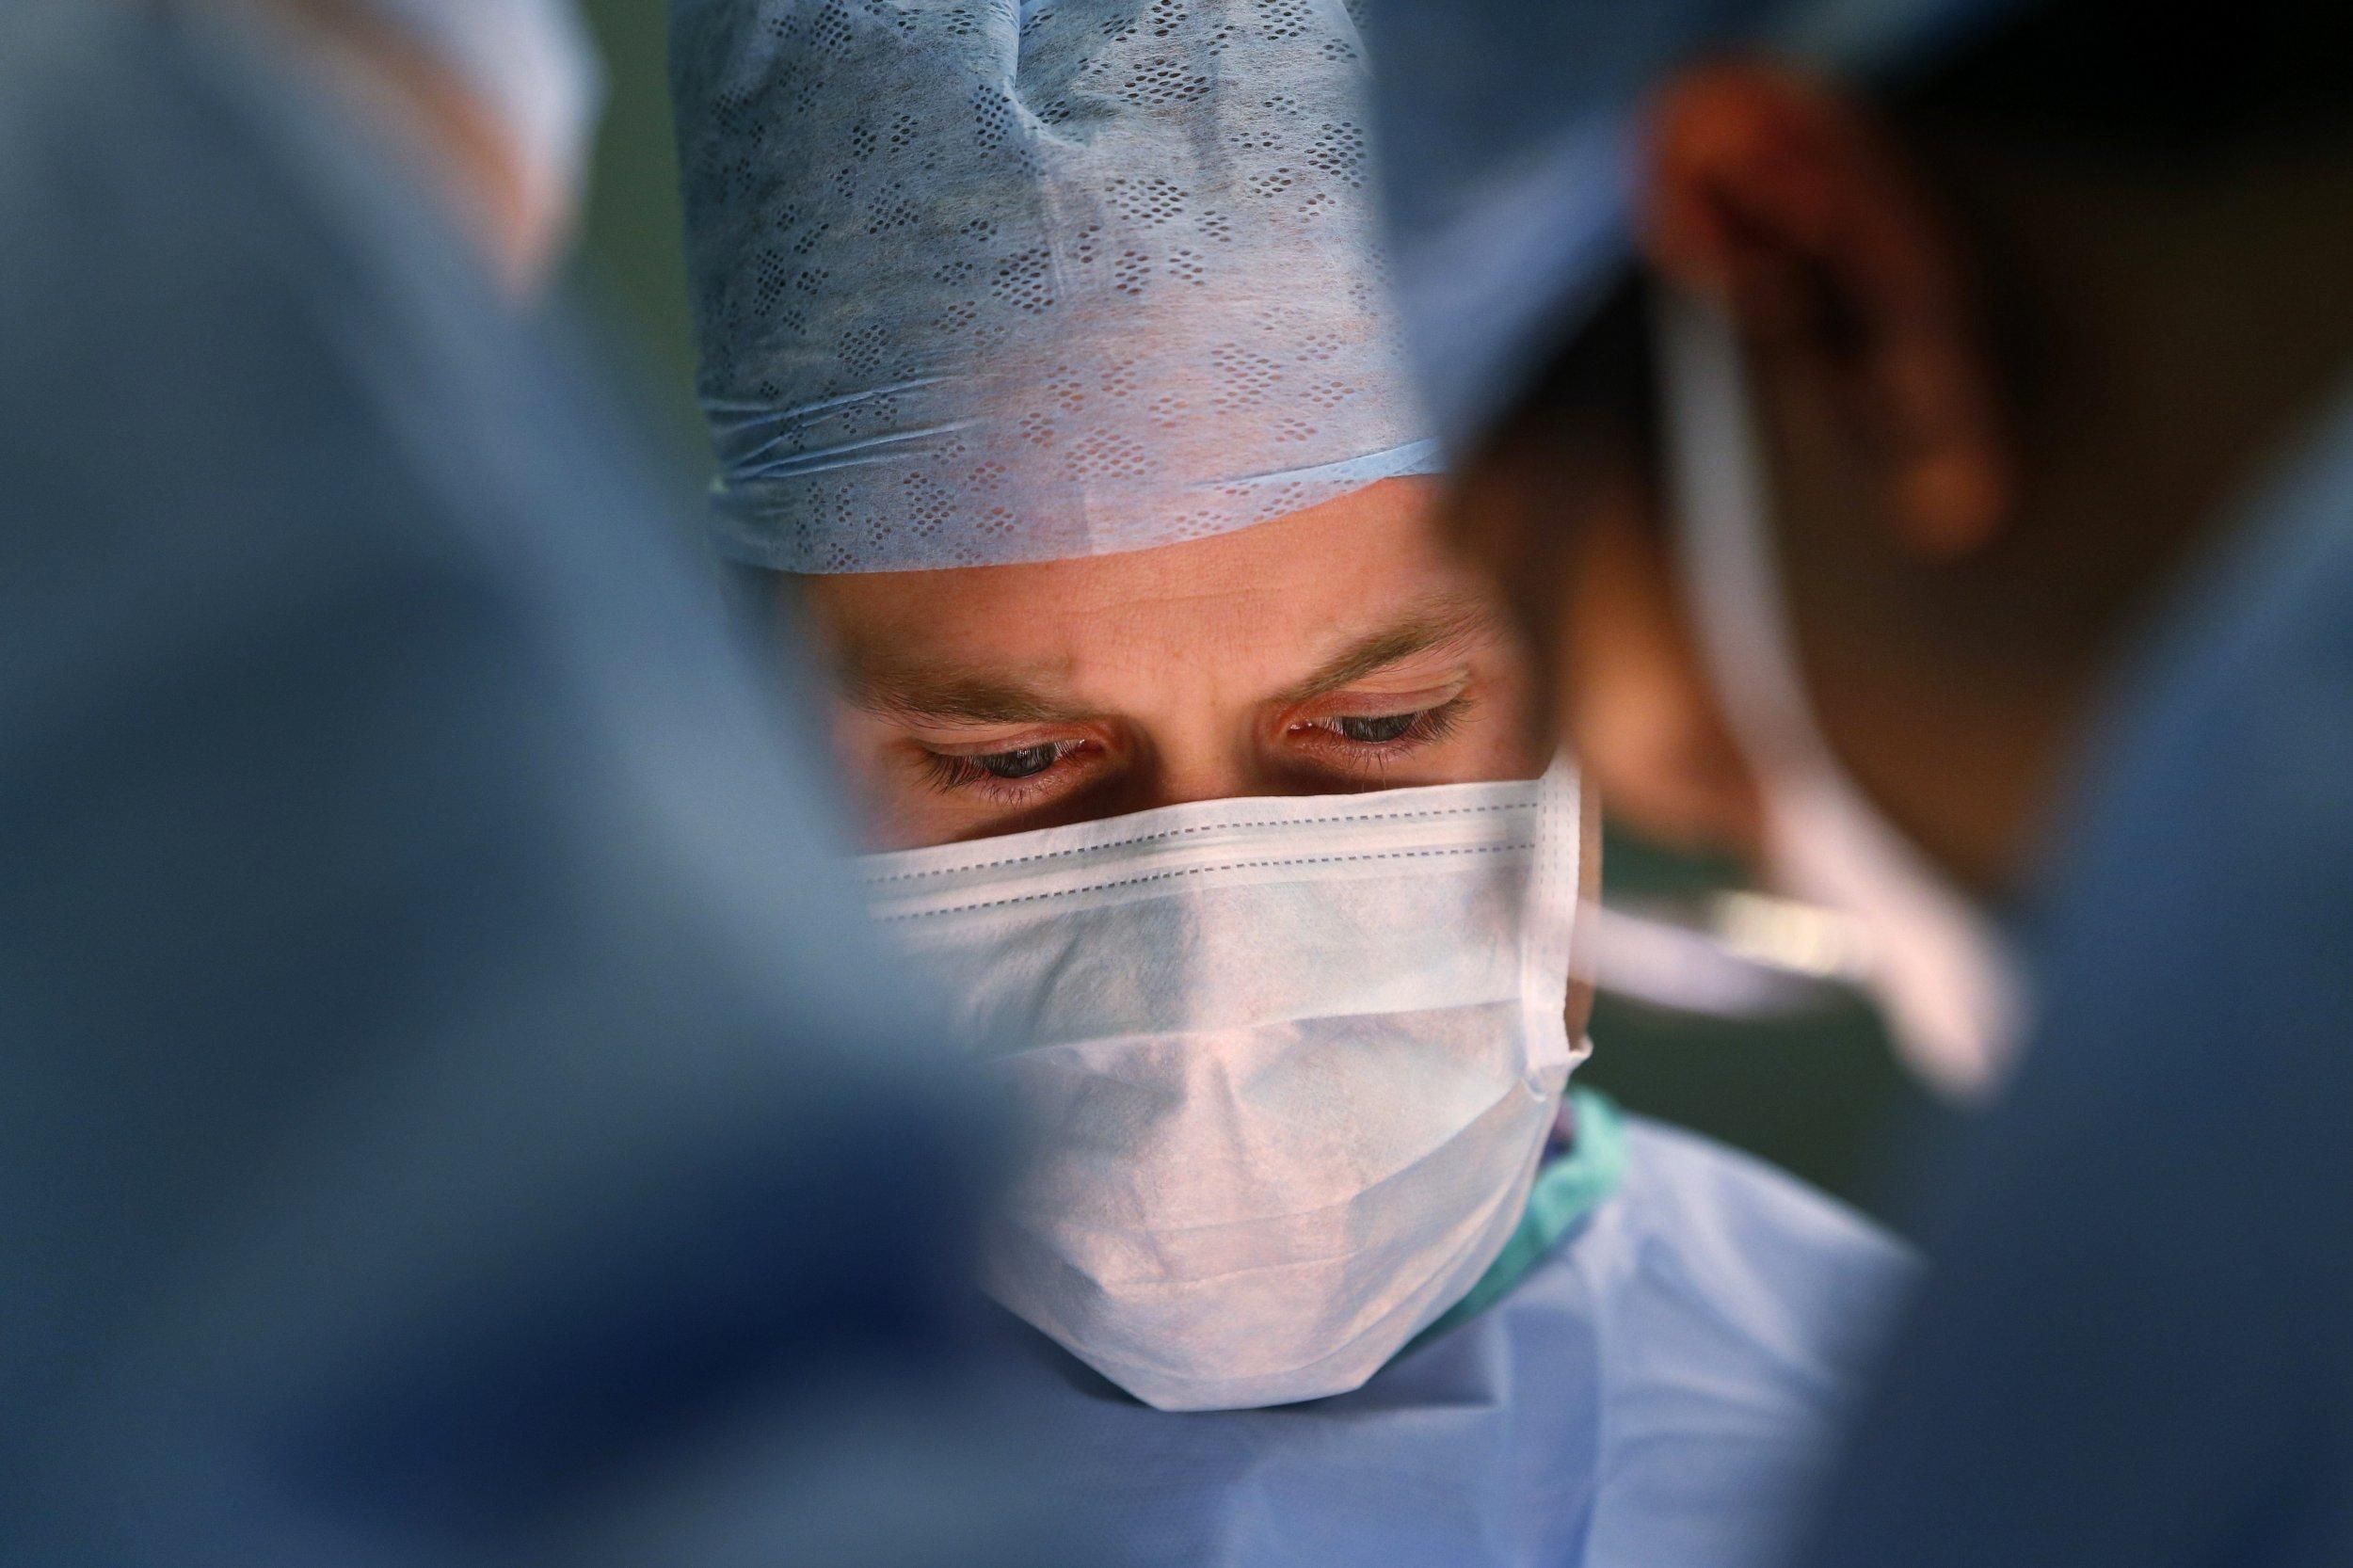 Вперше в історії України провели трансплантацію підшлункової залози: фото 18+